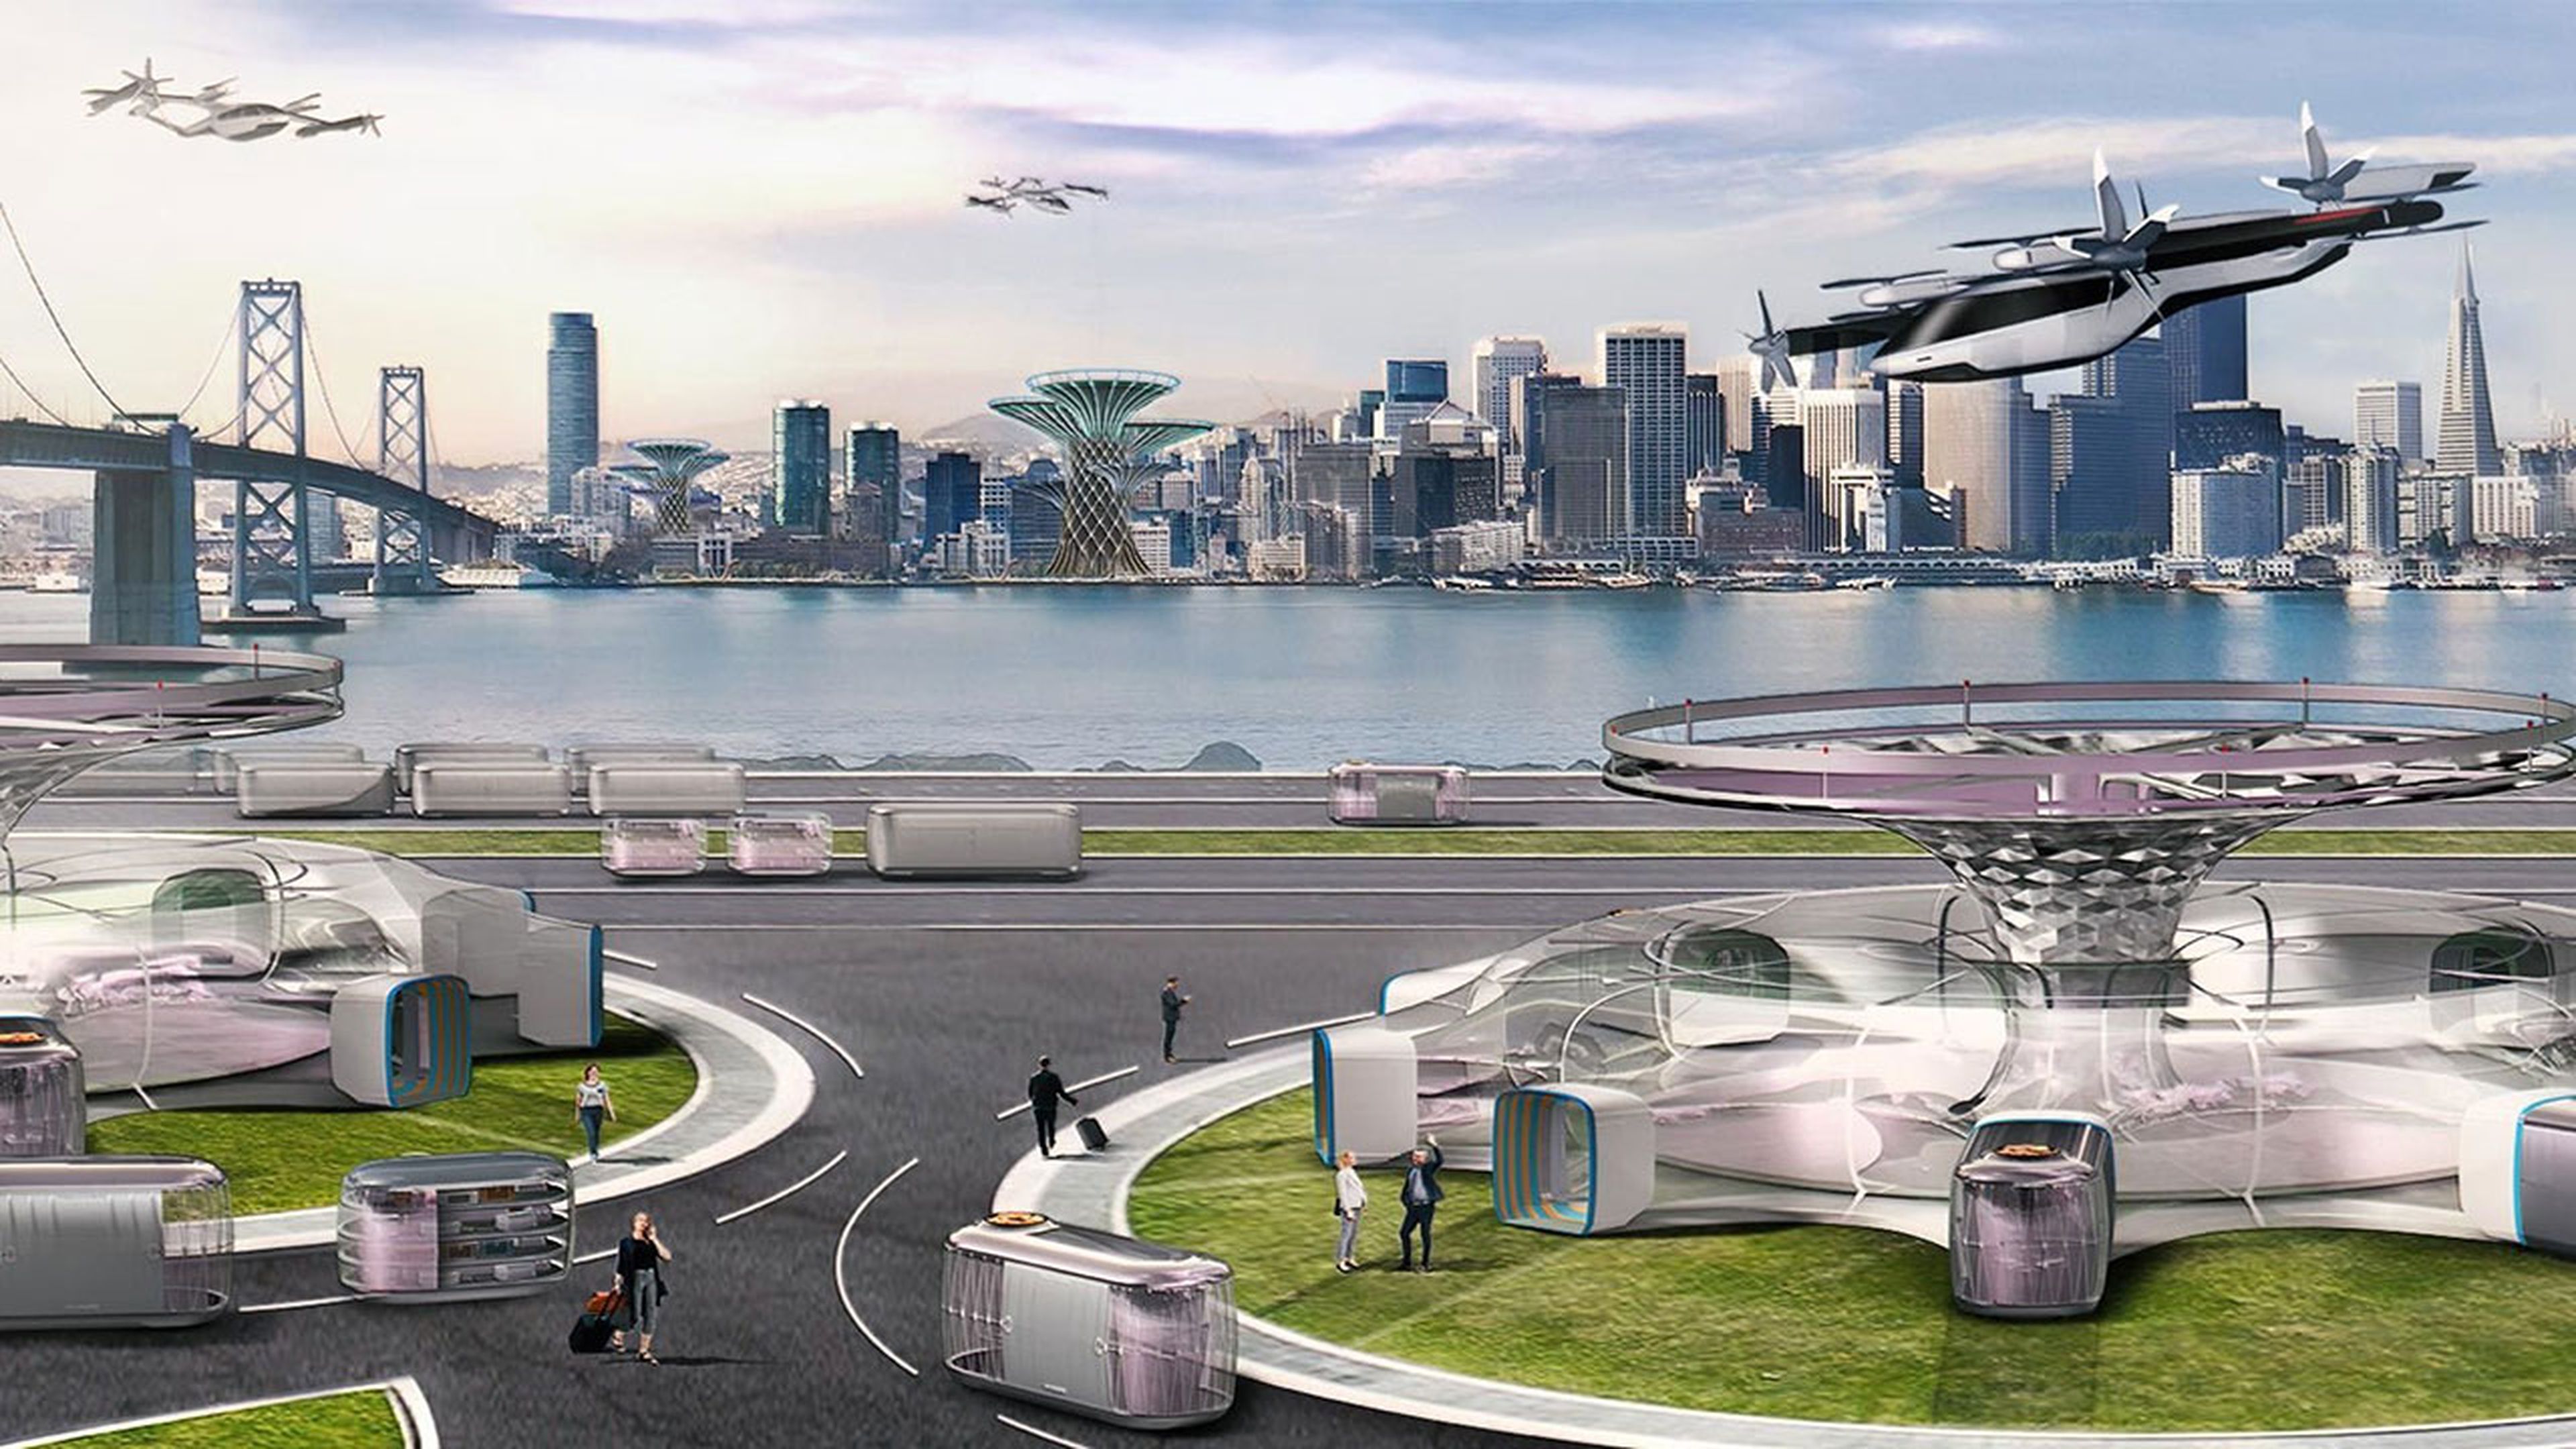 Ciudad de Futuro según Hyundai